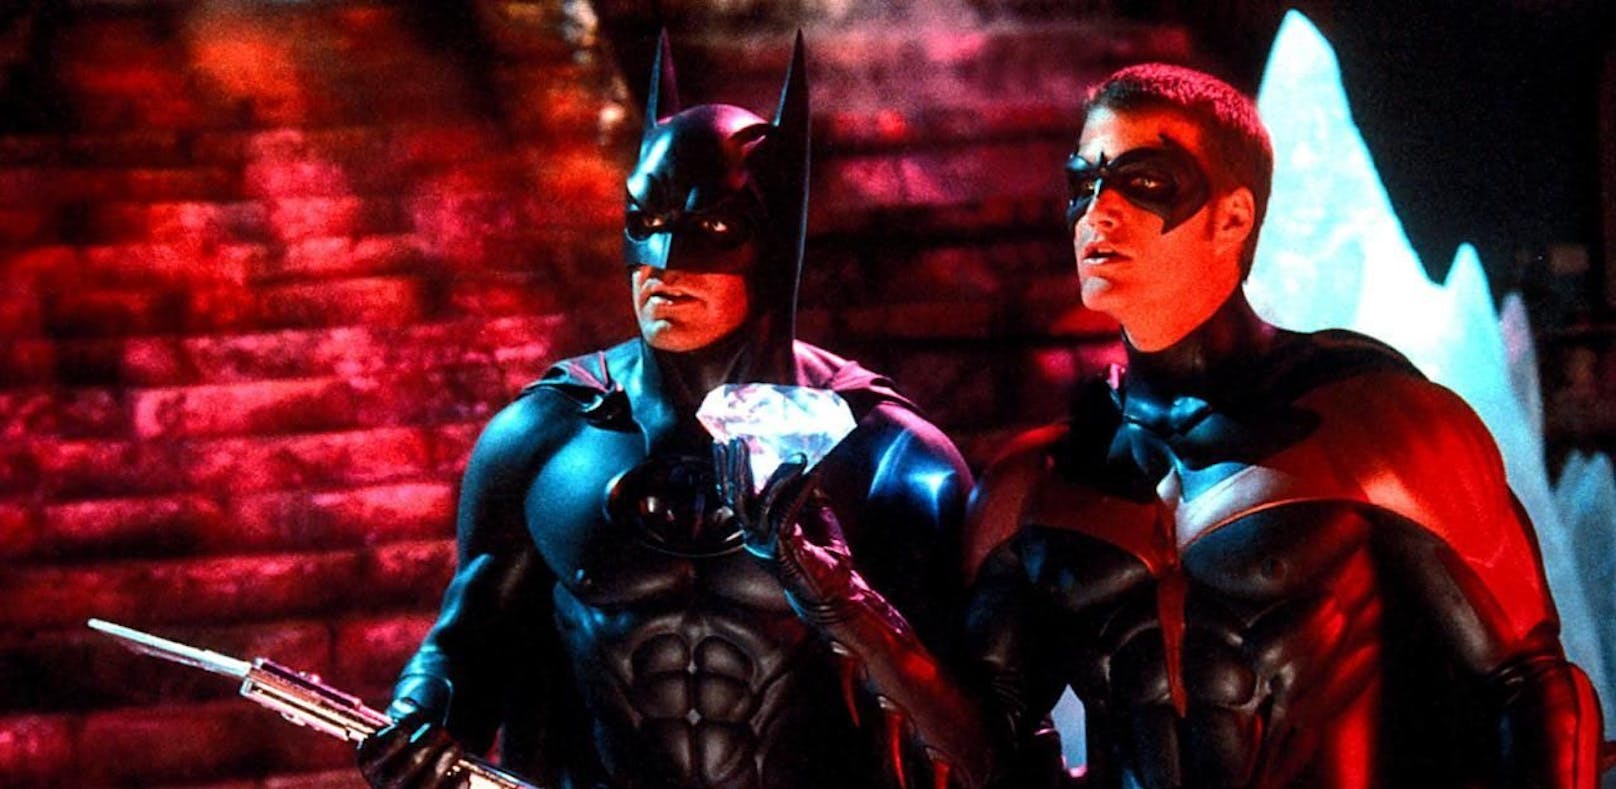 Regisseur entschuldigt sich für "Batman & Robin"